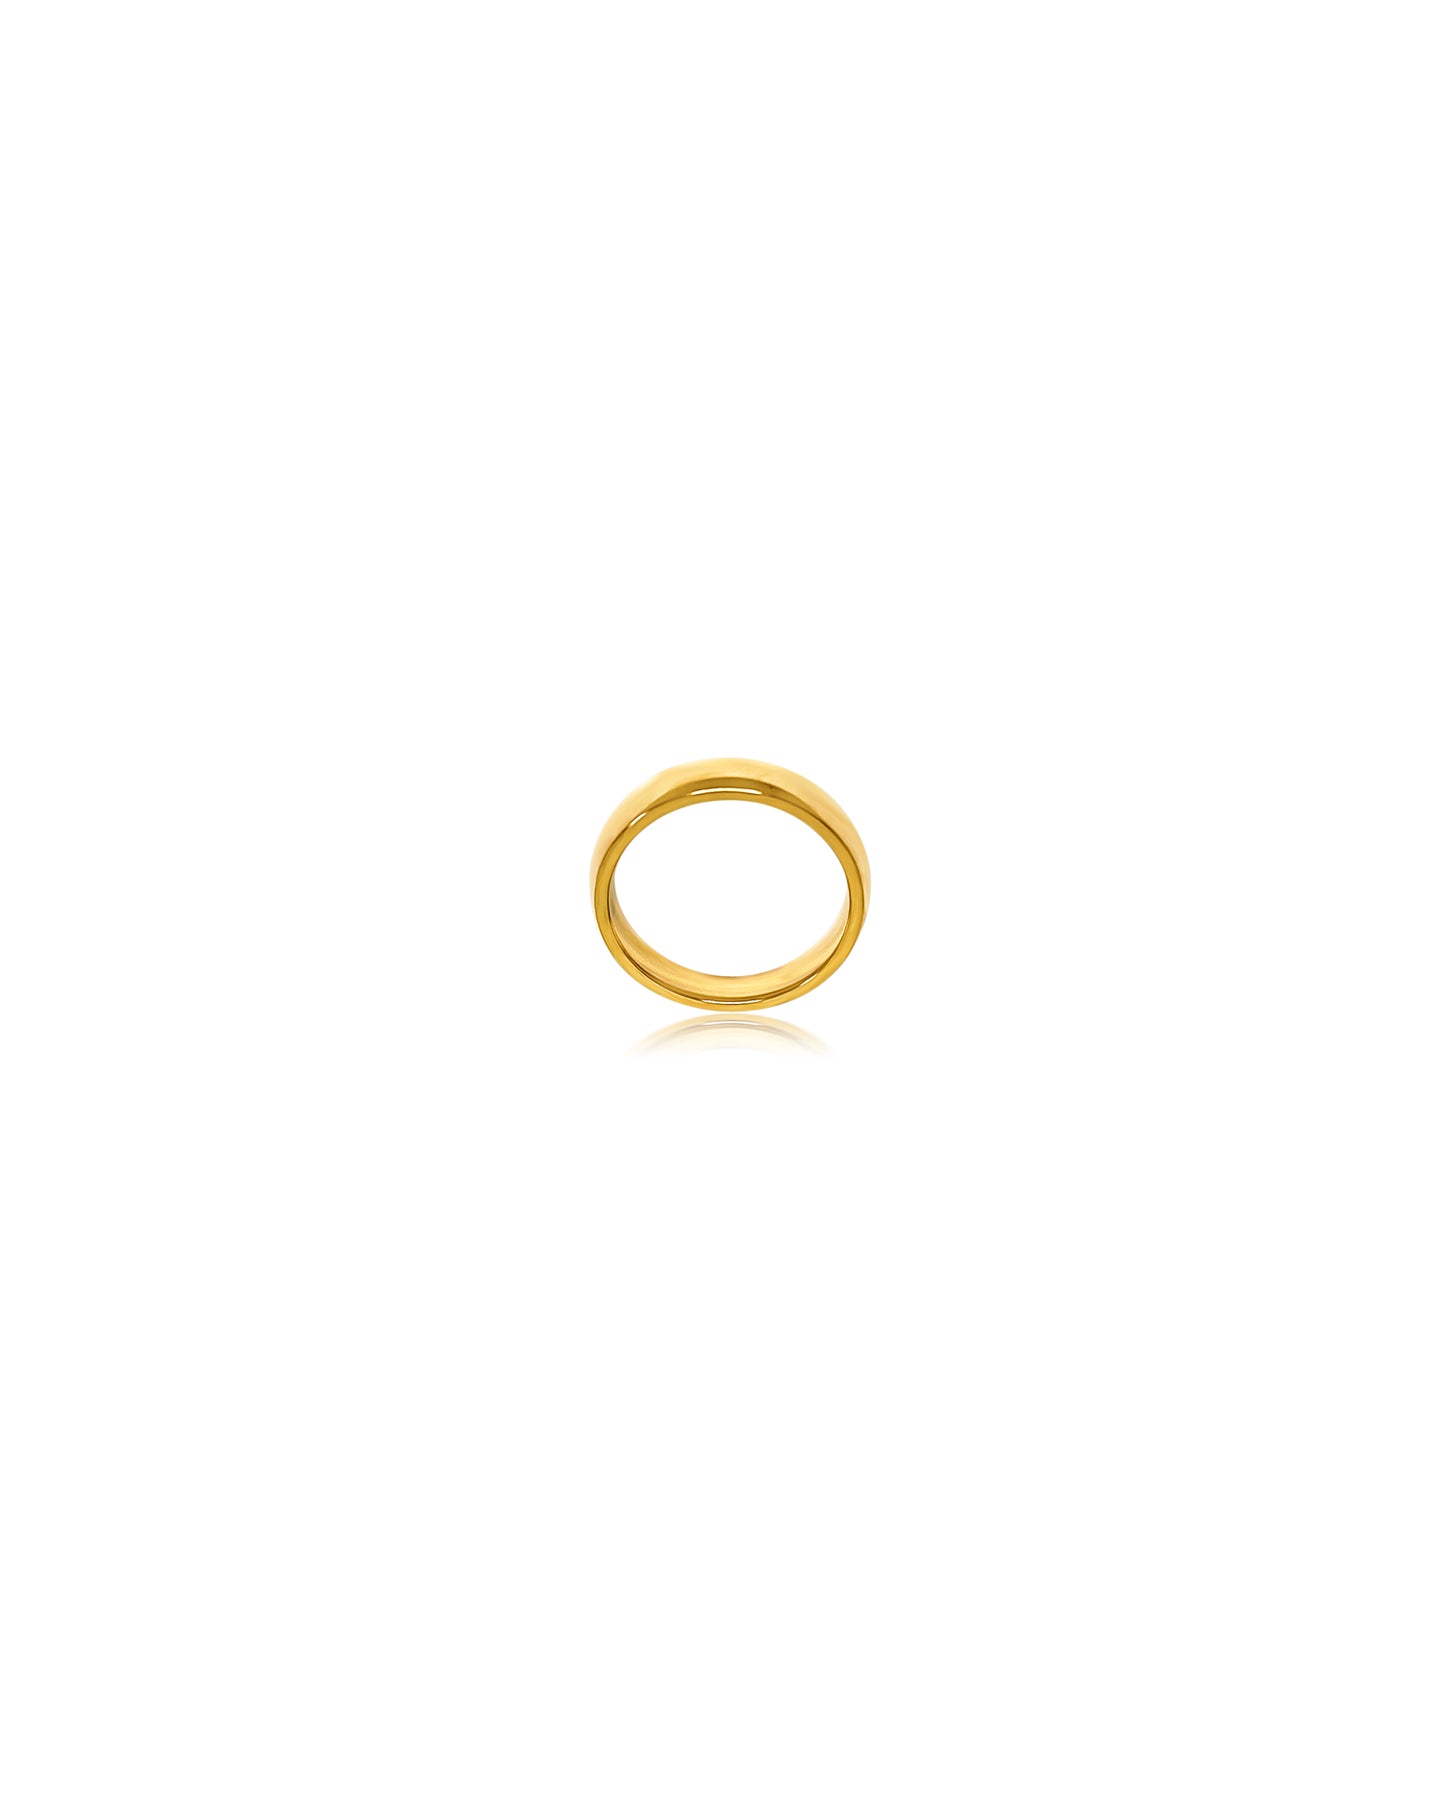 “ Nora” rings